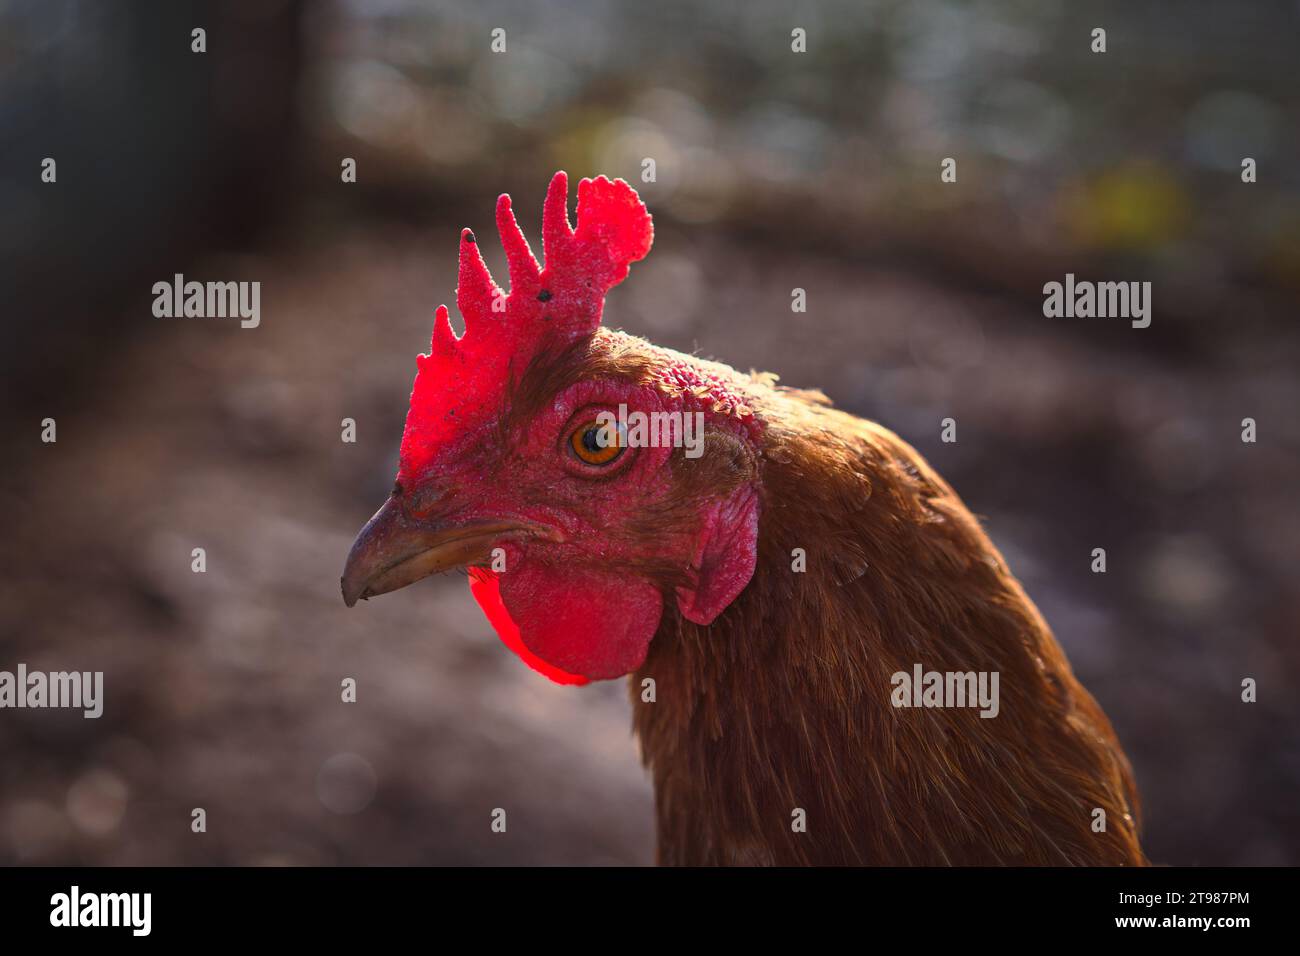 Gros plan d'une poule brune au soleil. Élevage de poulets. Ferme biologique. Libre accès. Banque D'Images